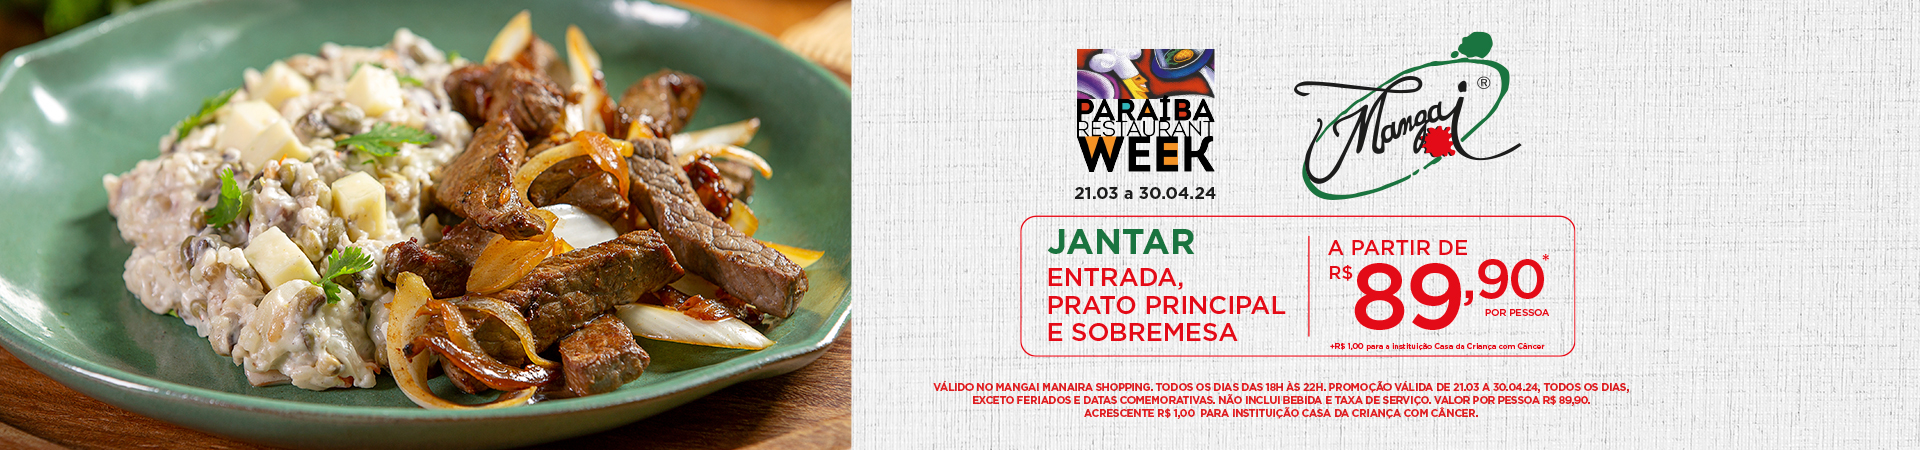 Paraíba Restaurant Week